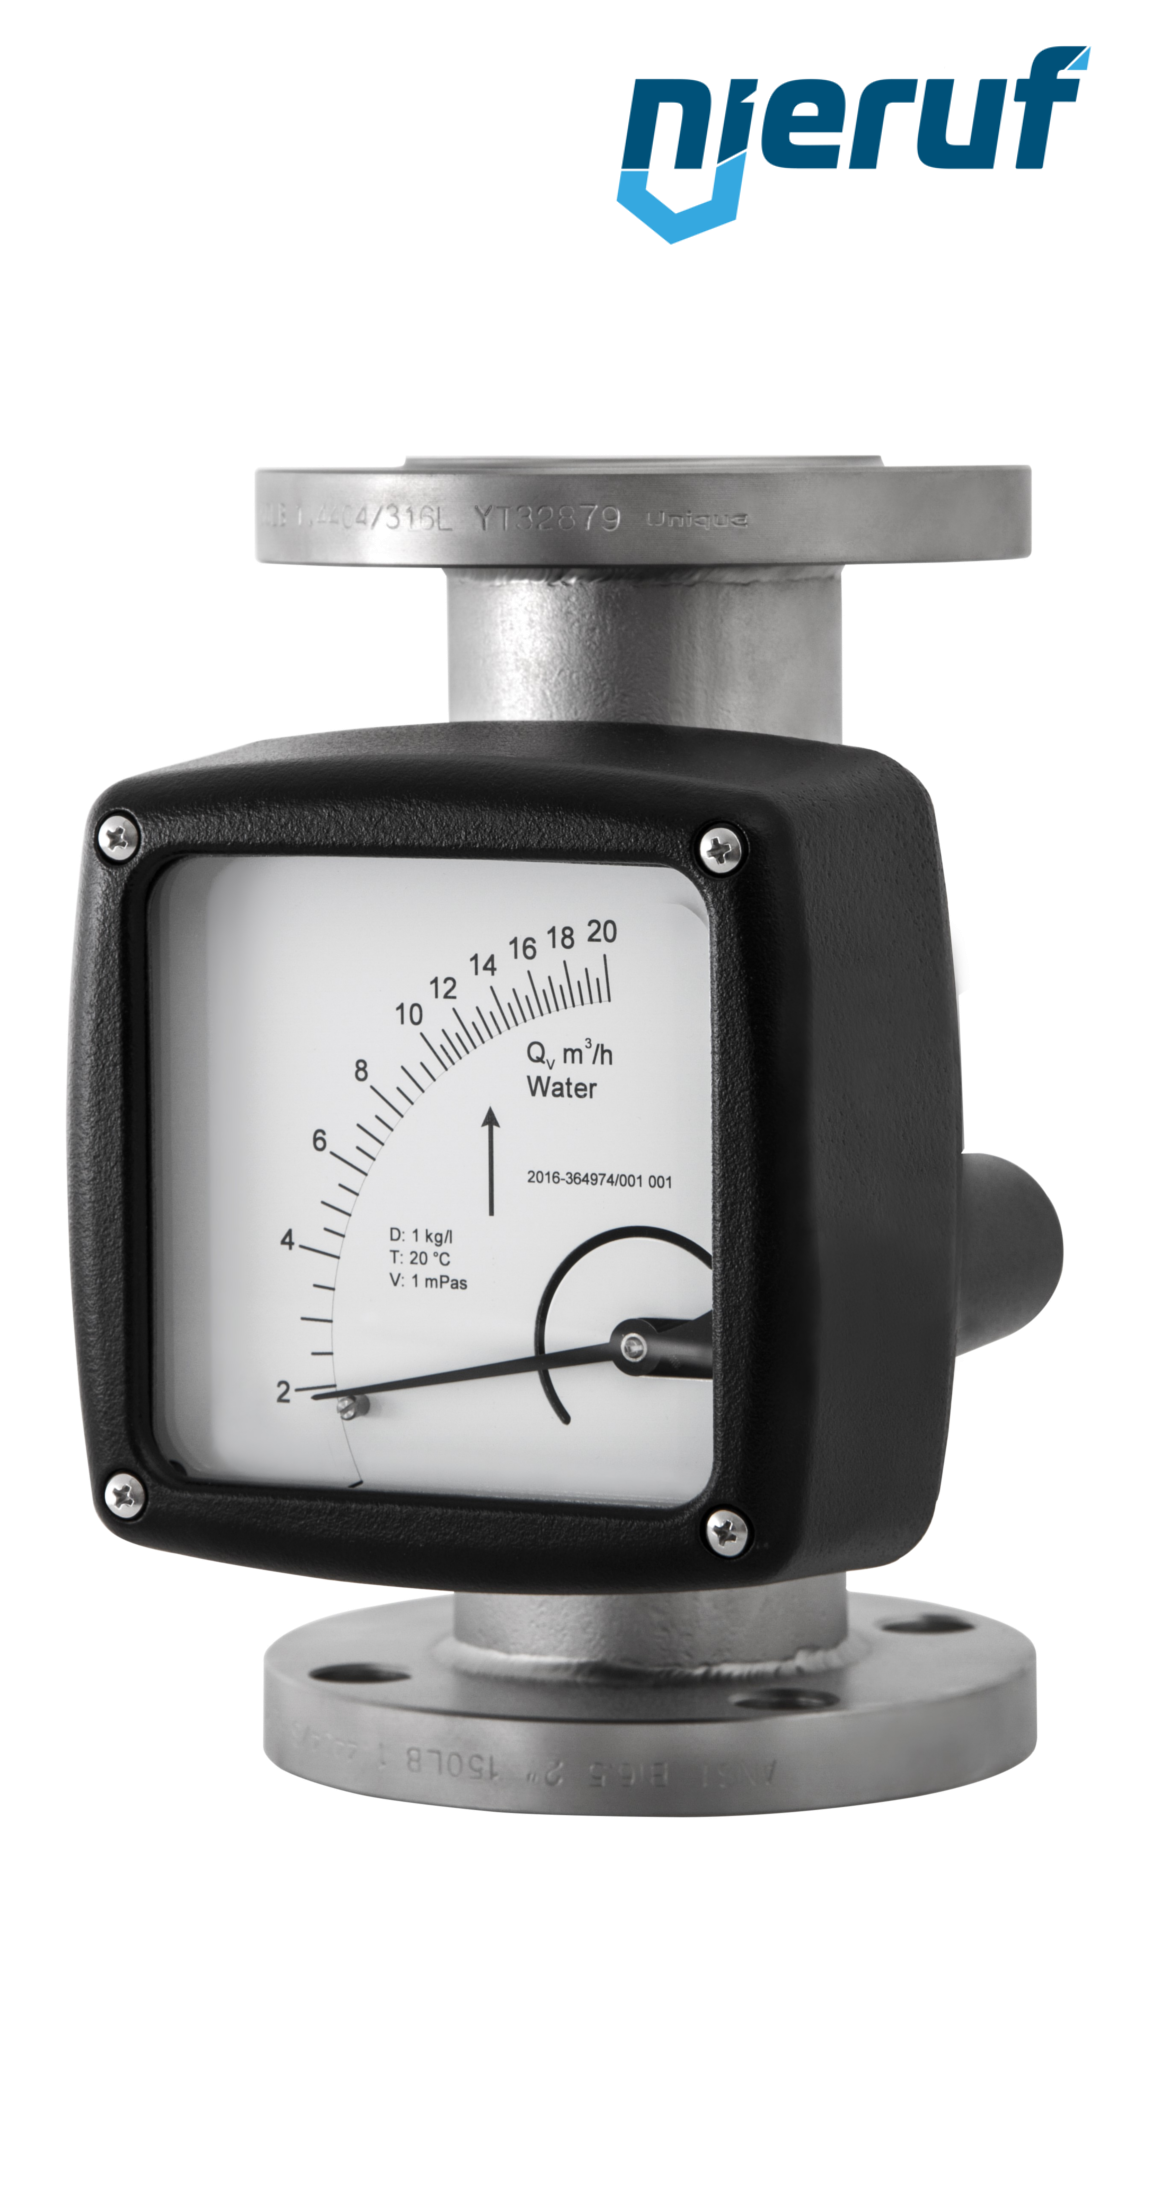 misuratore di portata / flussometro flangiato DN40-attacco 0,15 - 1,5 m3/h tubo DN15 aria